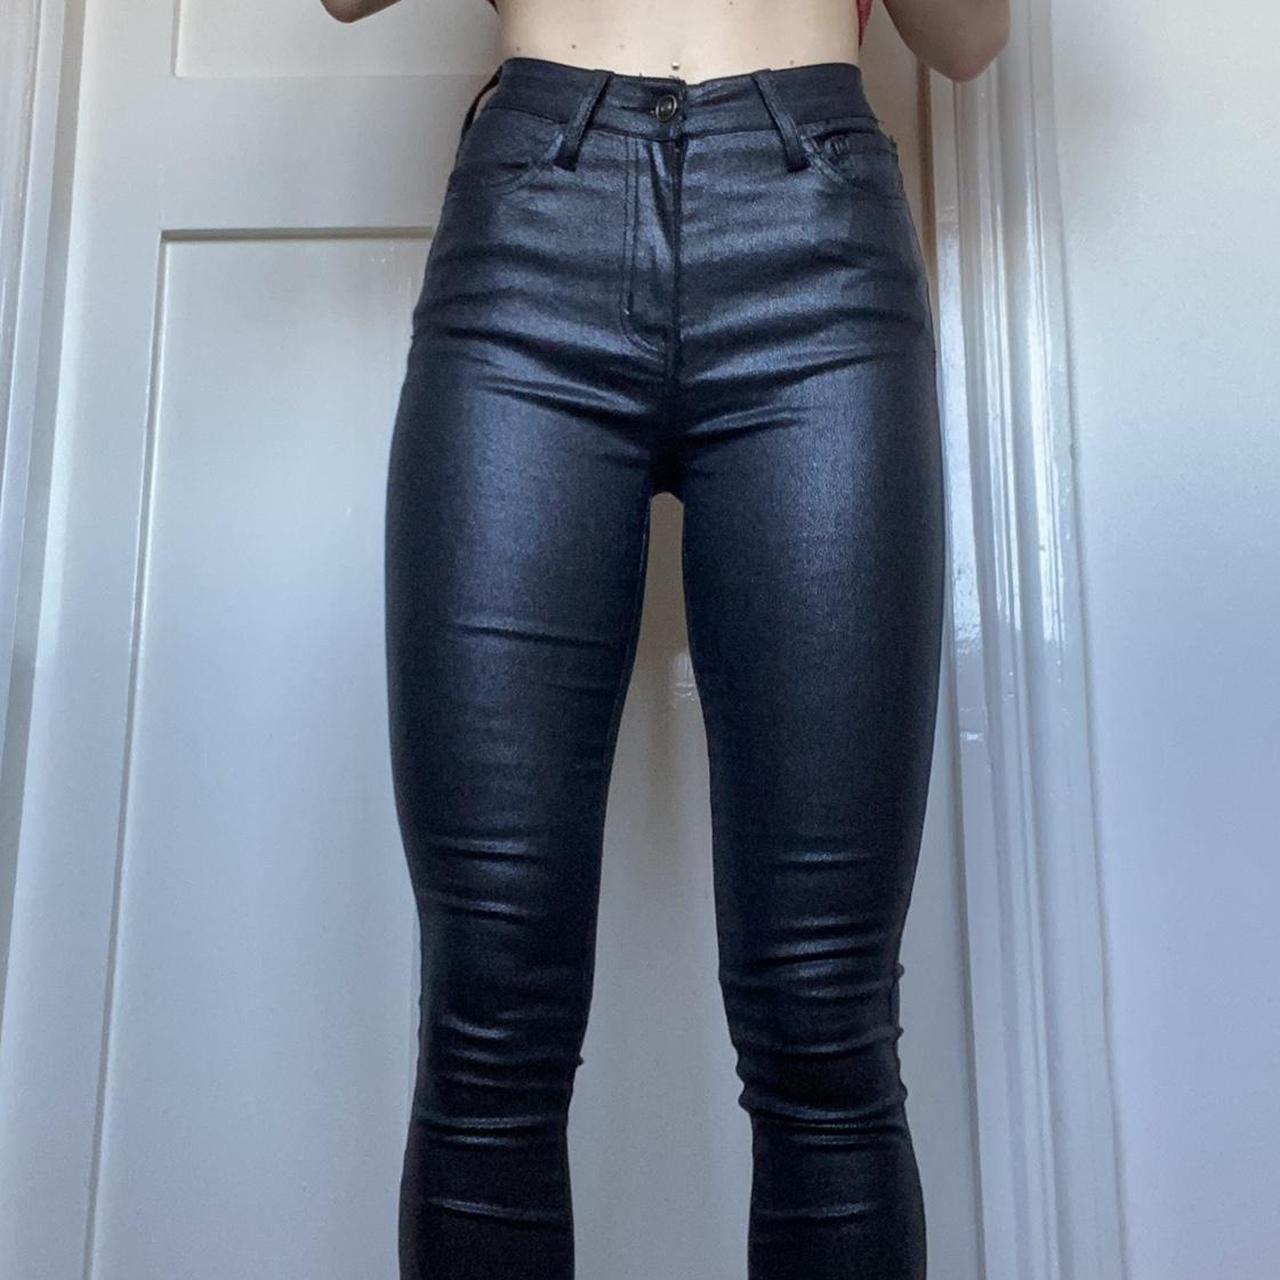 Fashion Nova high waisted black leather look /... - Depop